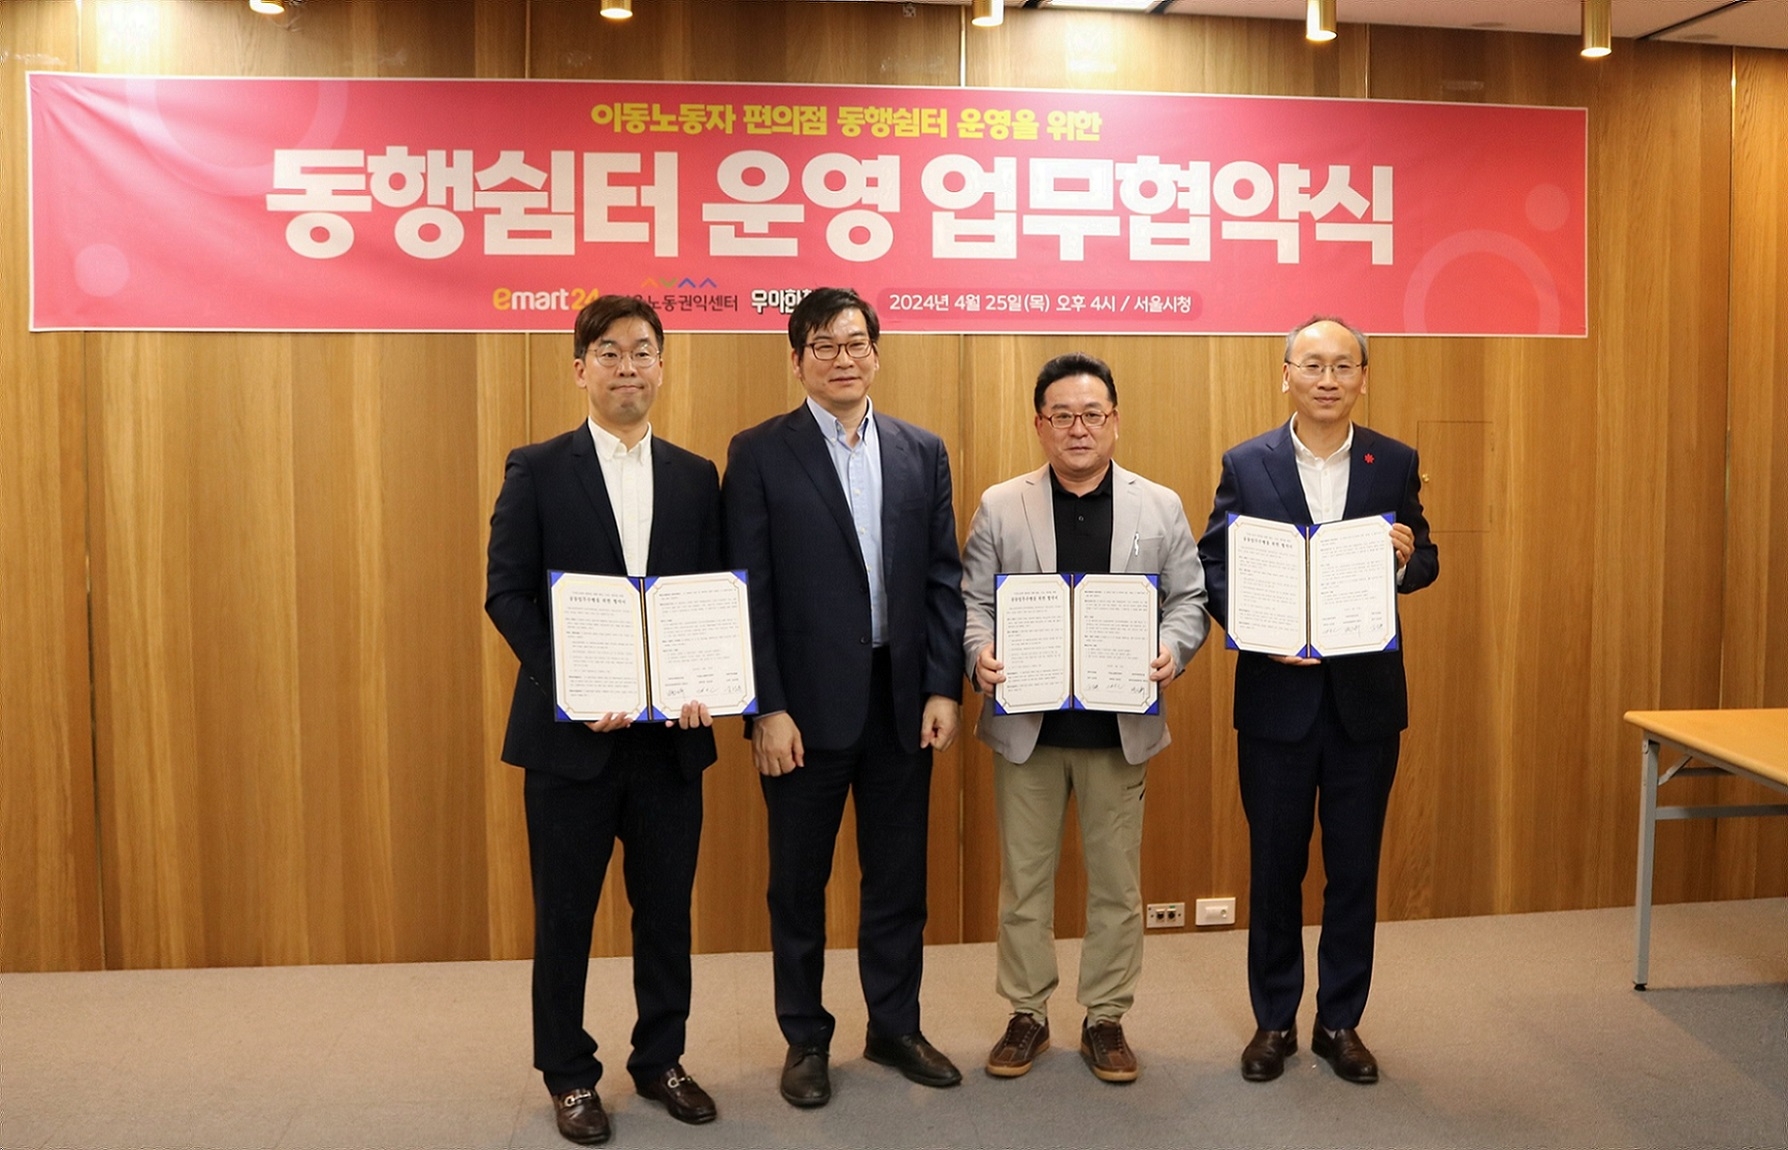 이마트24, 서울 시 이동노동자에게 1만원 상당 모바일 금액권 제공